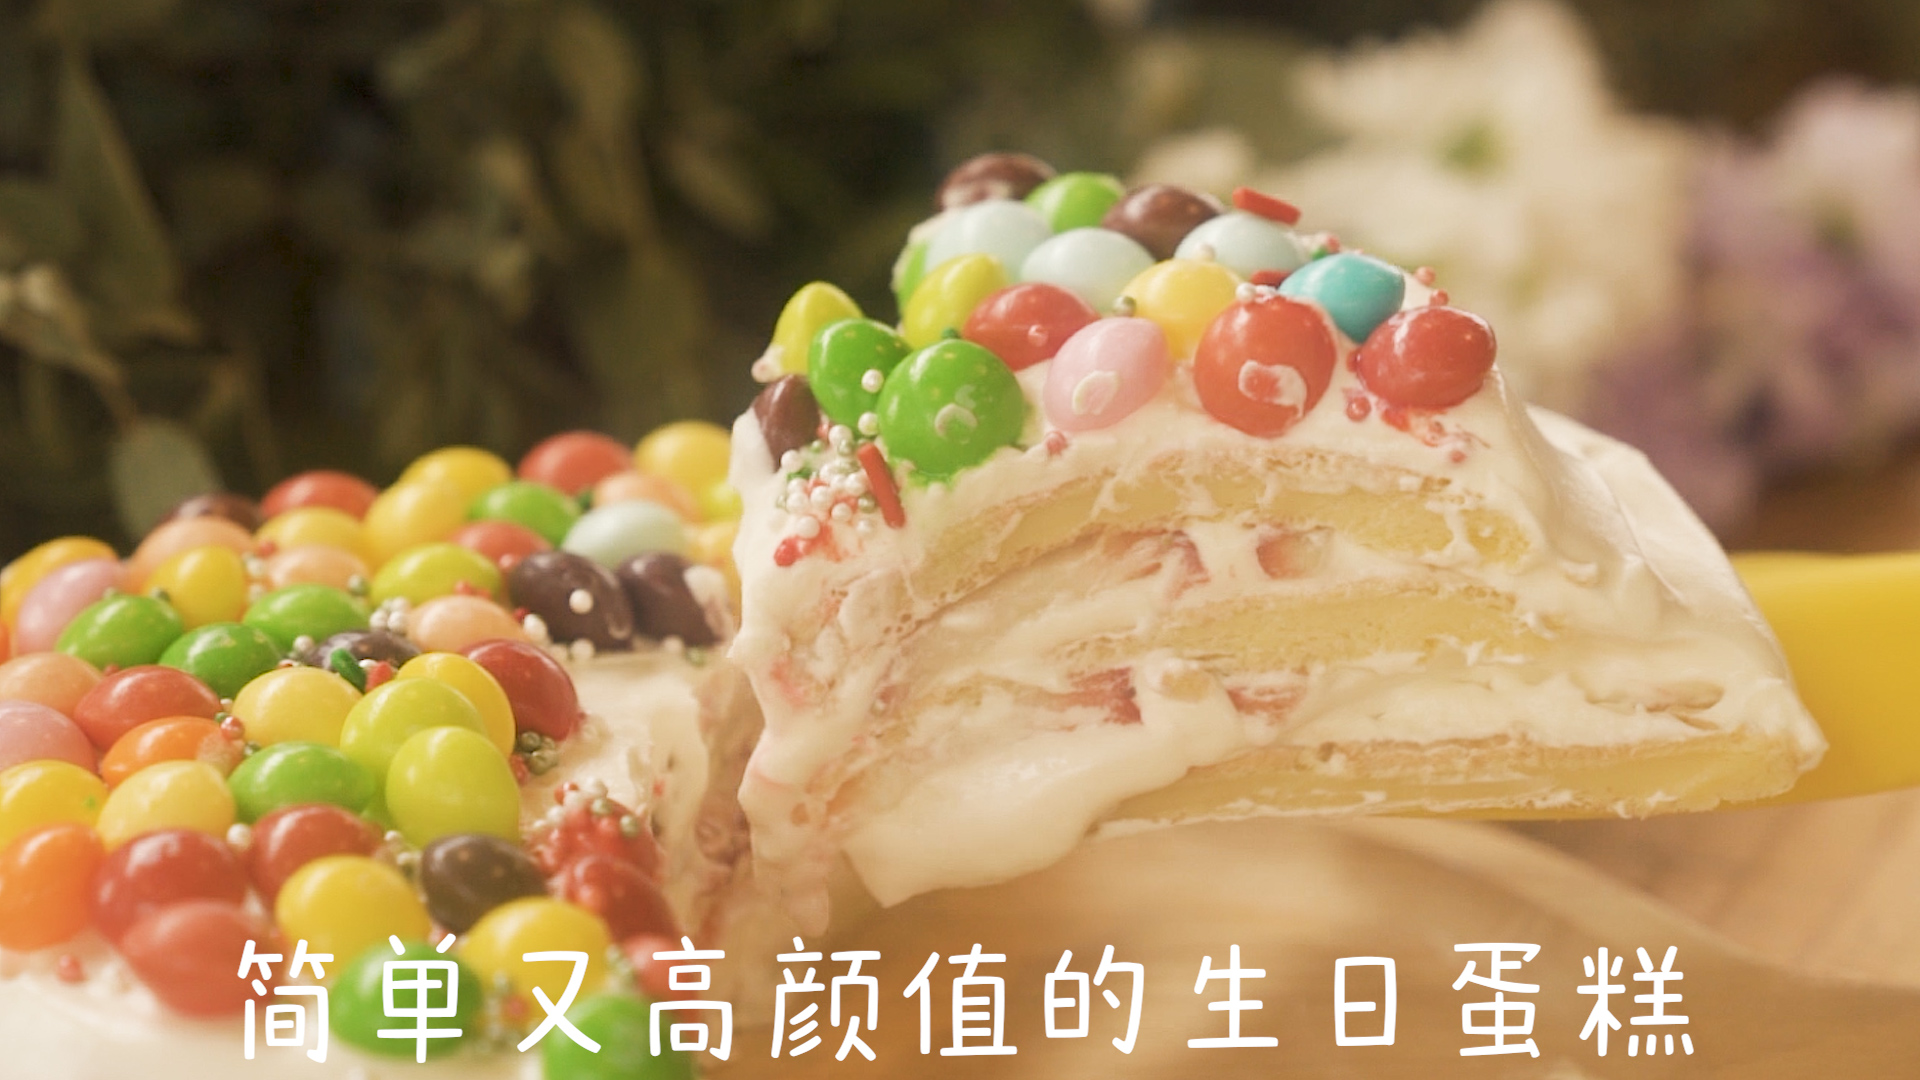 新手简易版 | 彩虹奶油生日蛋糕